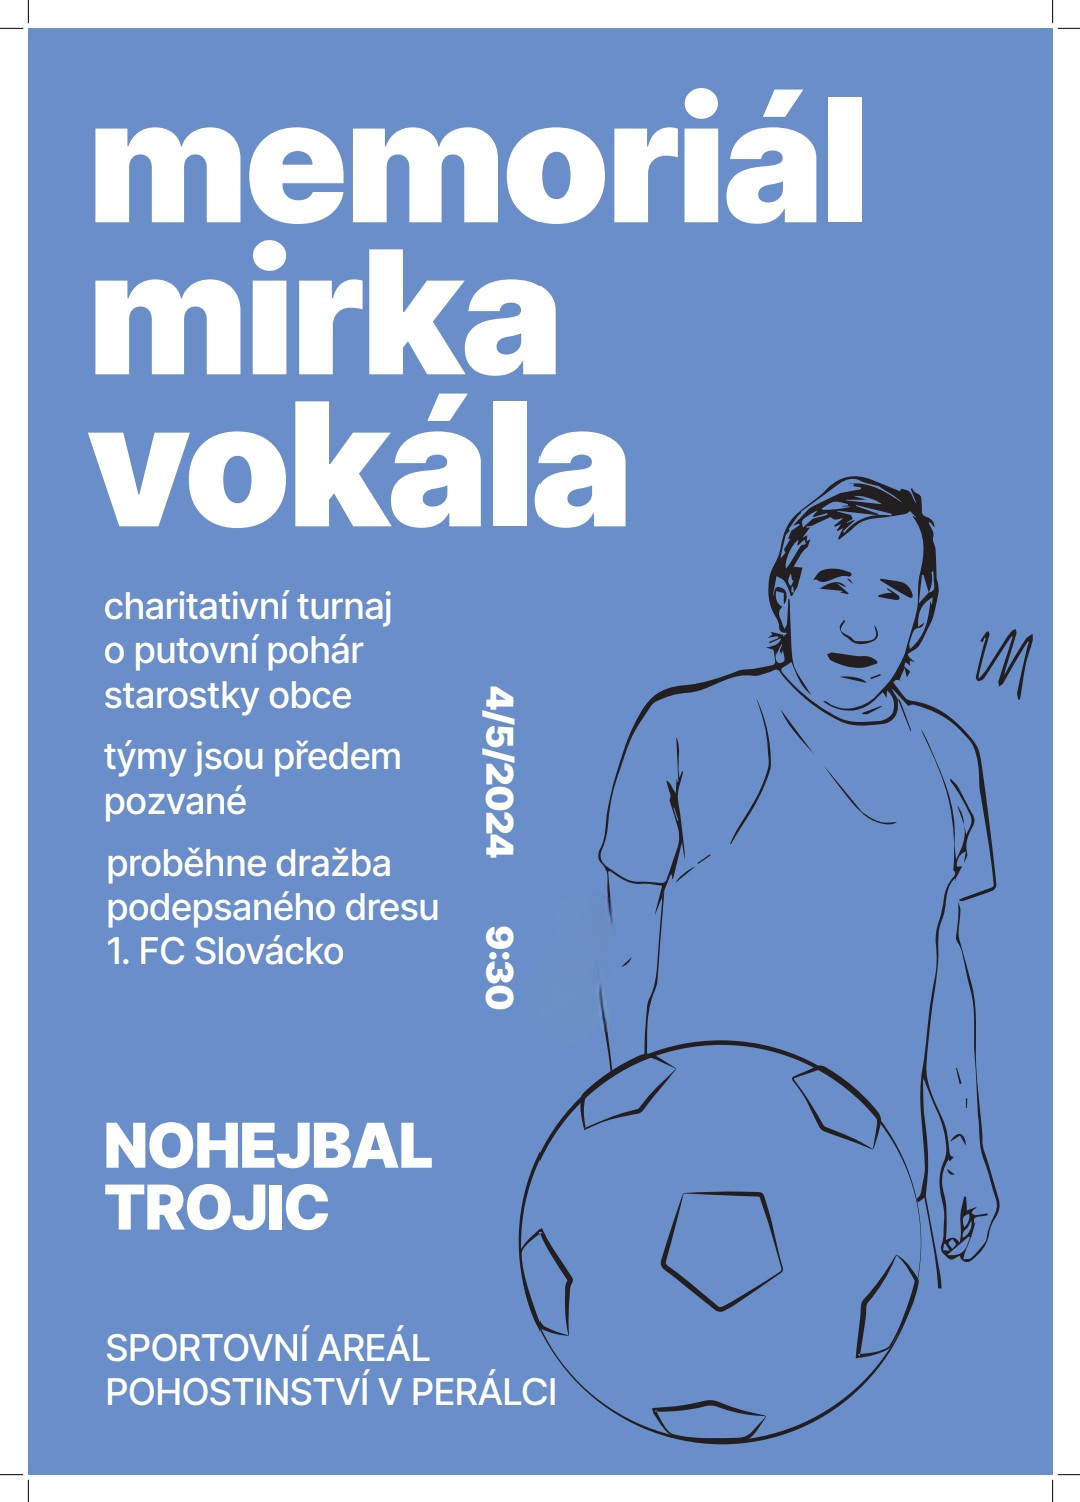 Nohejbal trojic: Memoriál Mirka Vokála